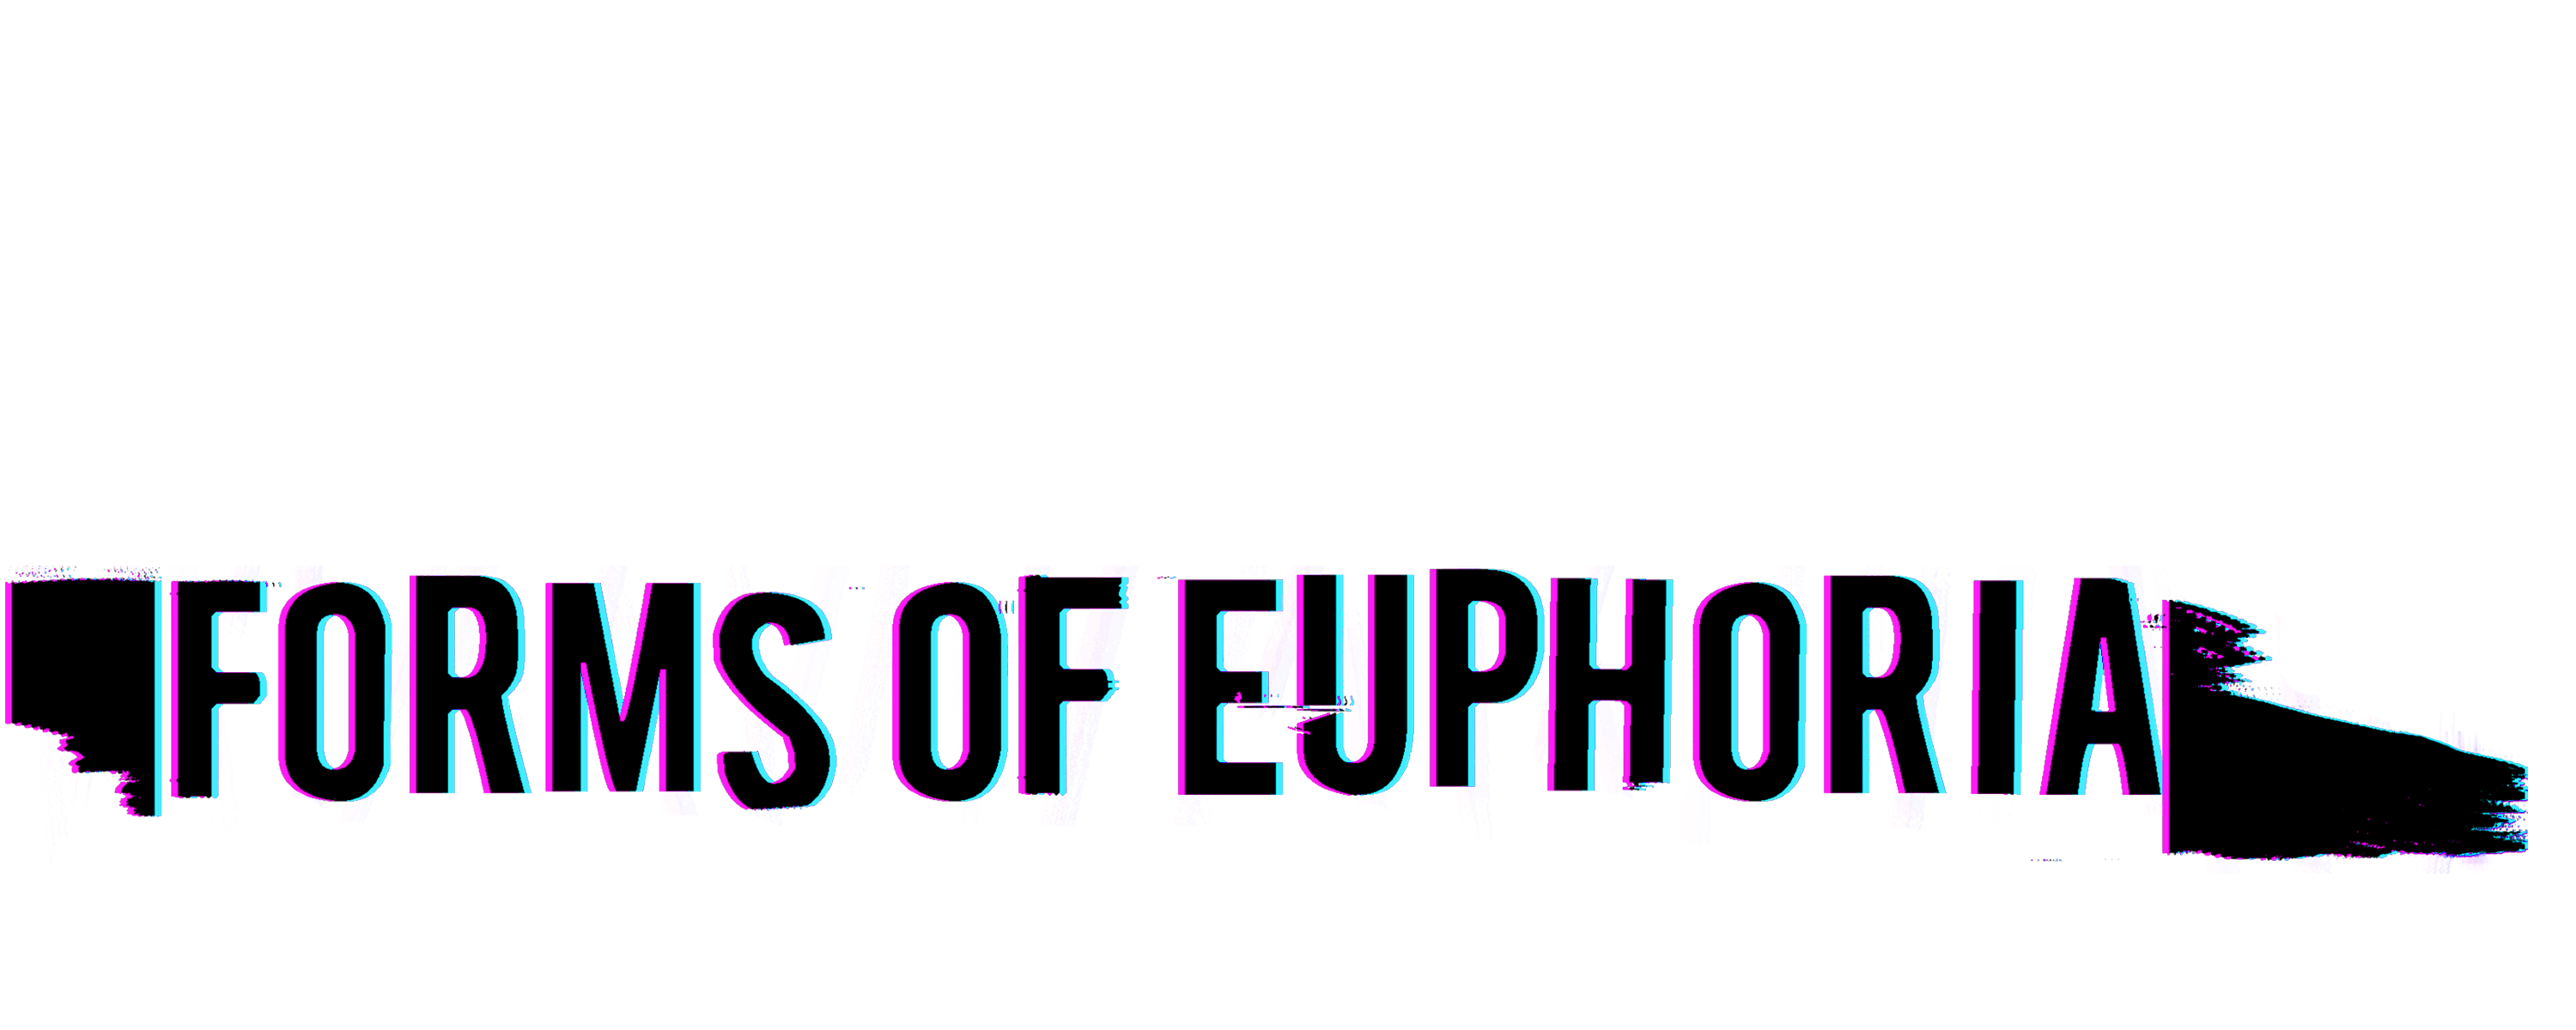 Forms of Euphoria